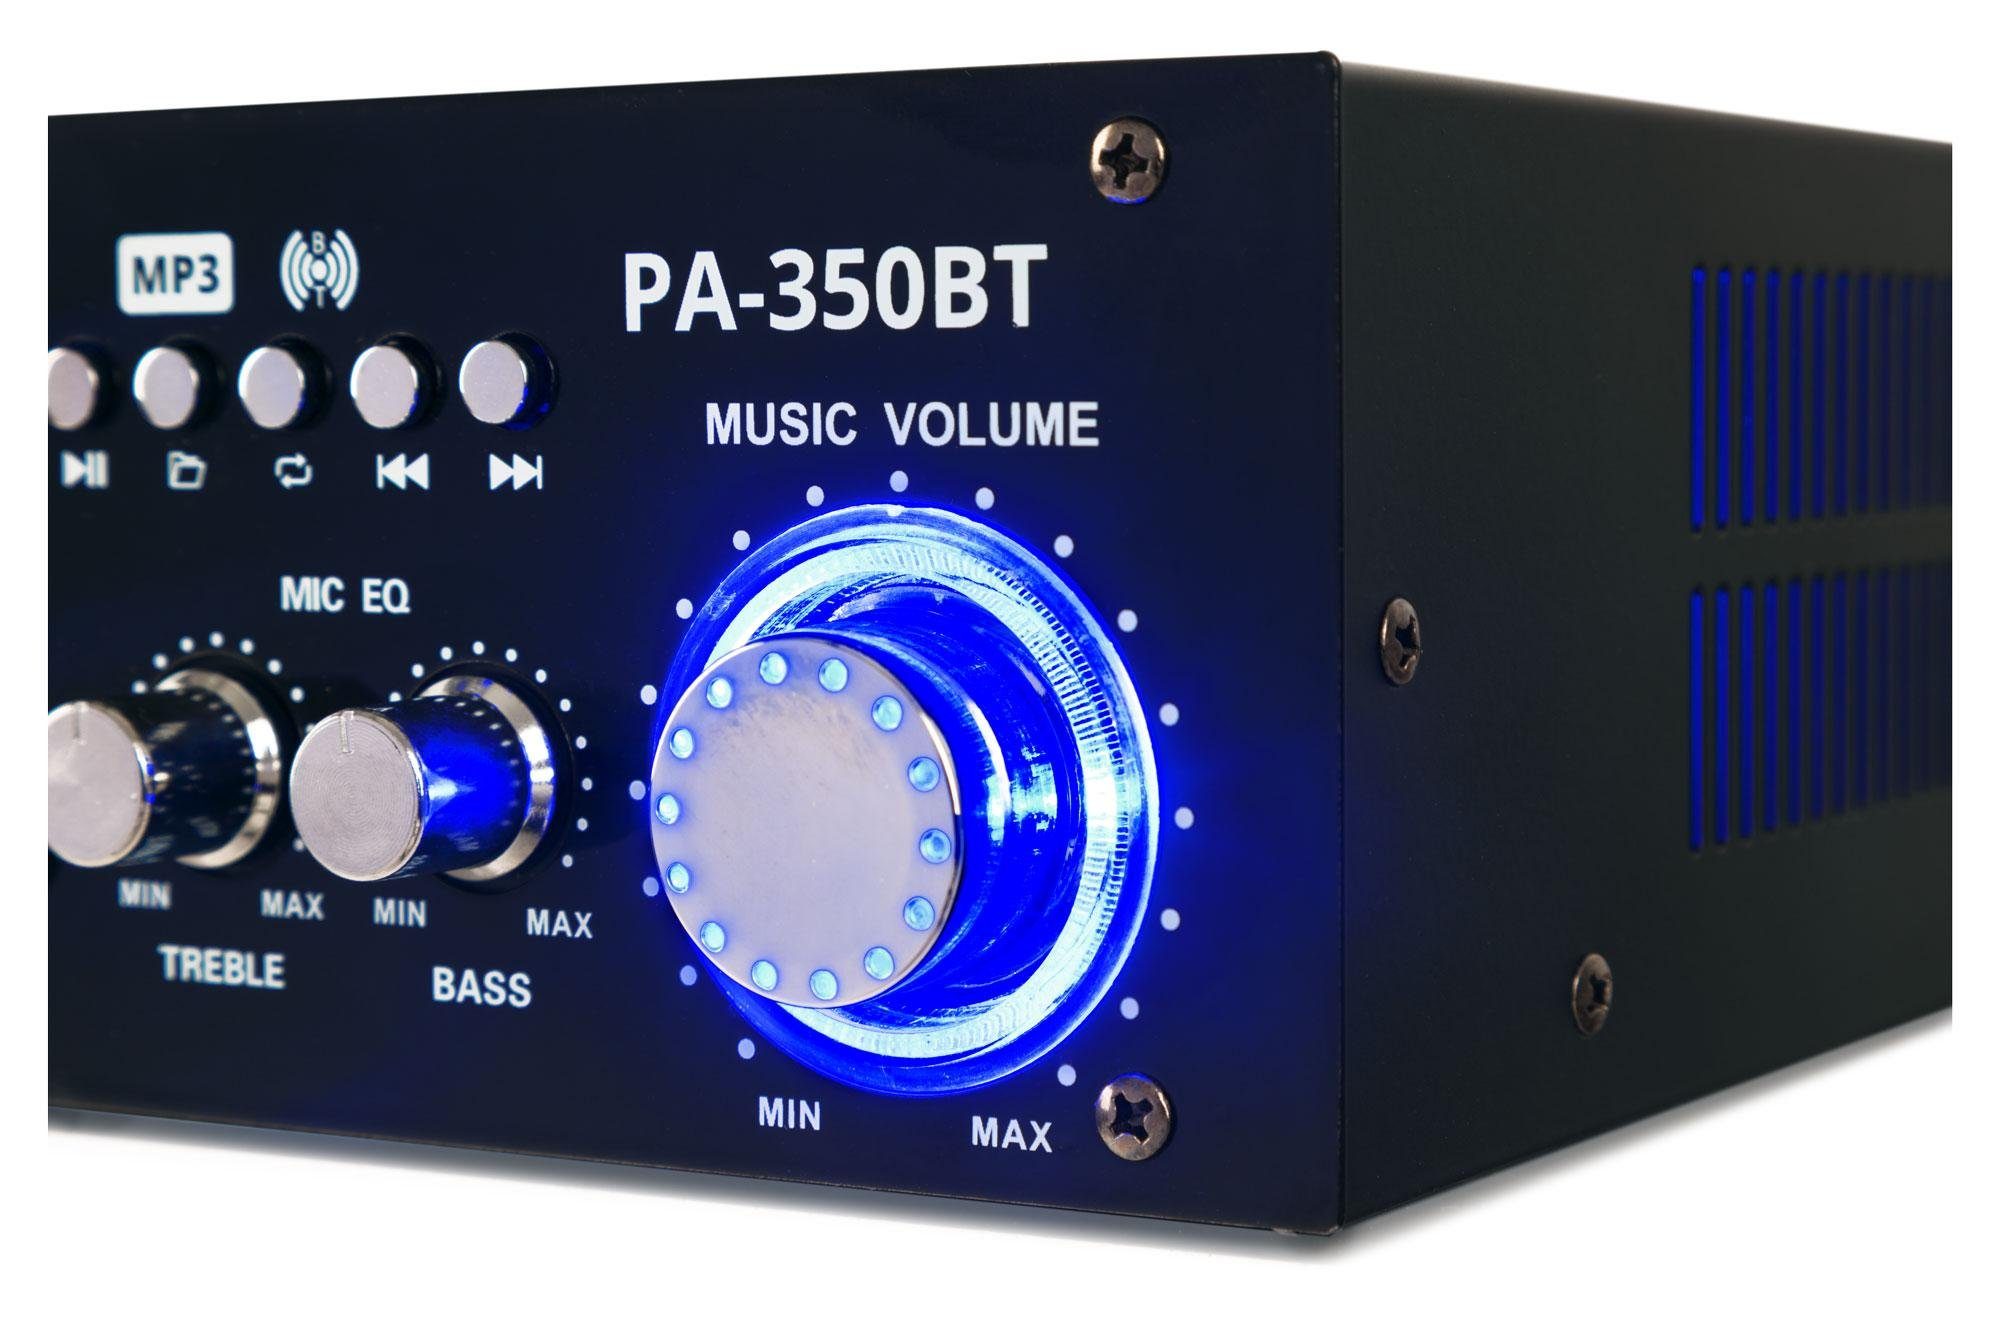 McGrey PA-350BT Bluetooth-Endstufe Endverstärker und Mikrofoneingängen W, Cinch-Eingang) (200 zwei - USB-MP3-Player